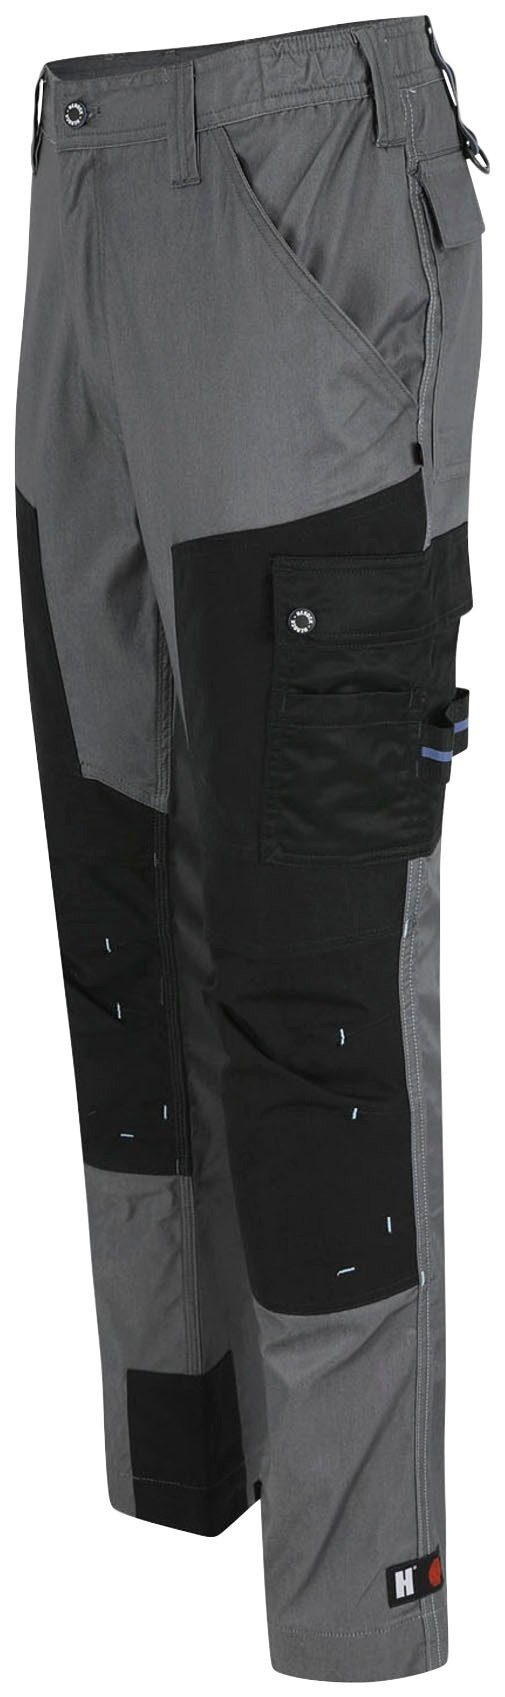 Herock Coolmax® Stretch, mit leicht Hose -Techn.; mehrere grau Viele Taschen, Arbeitshose Capua Farben